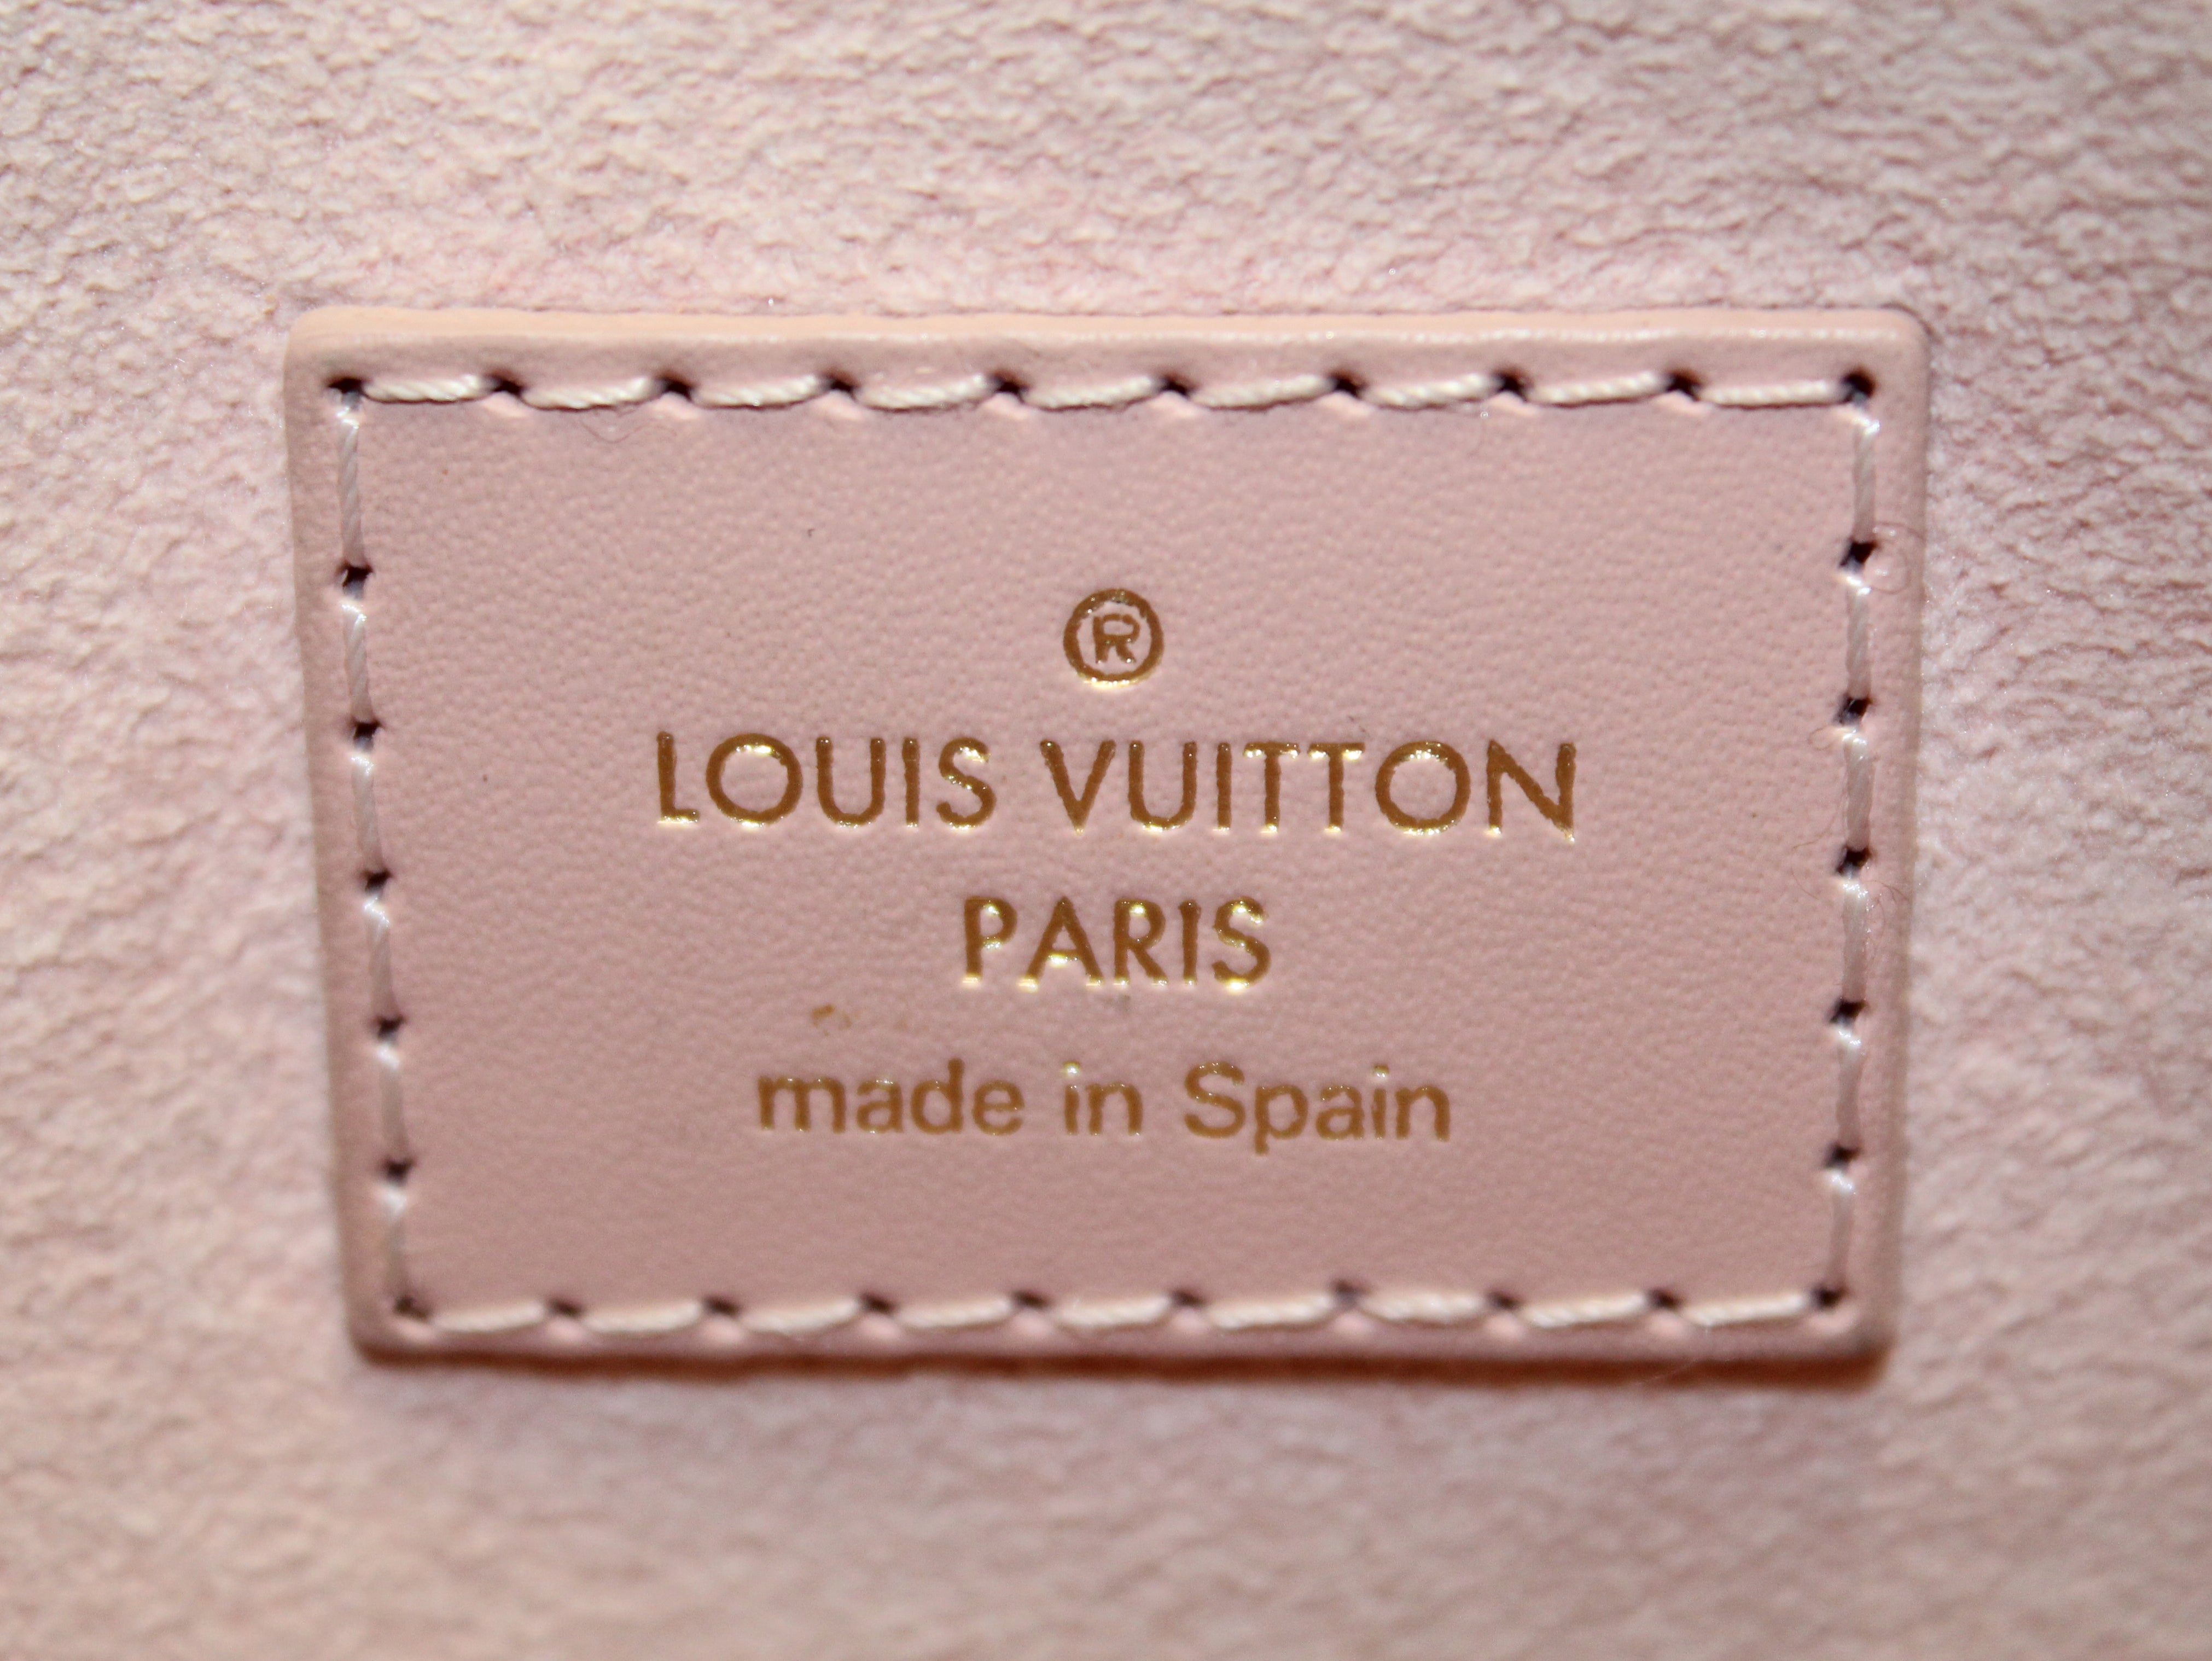 🔥NEW LOUIS VUITTON Large Damier Azur Pink Pouch Pochette Wristlet